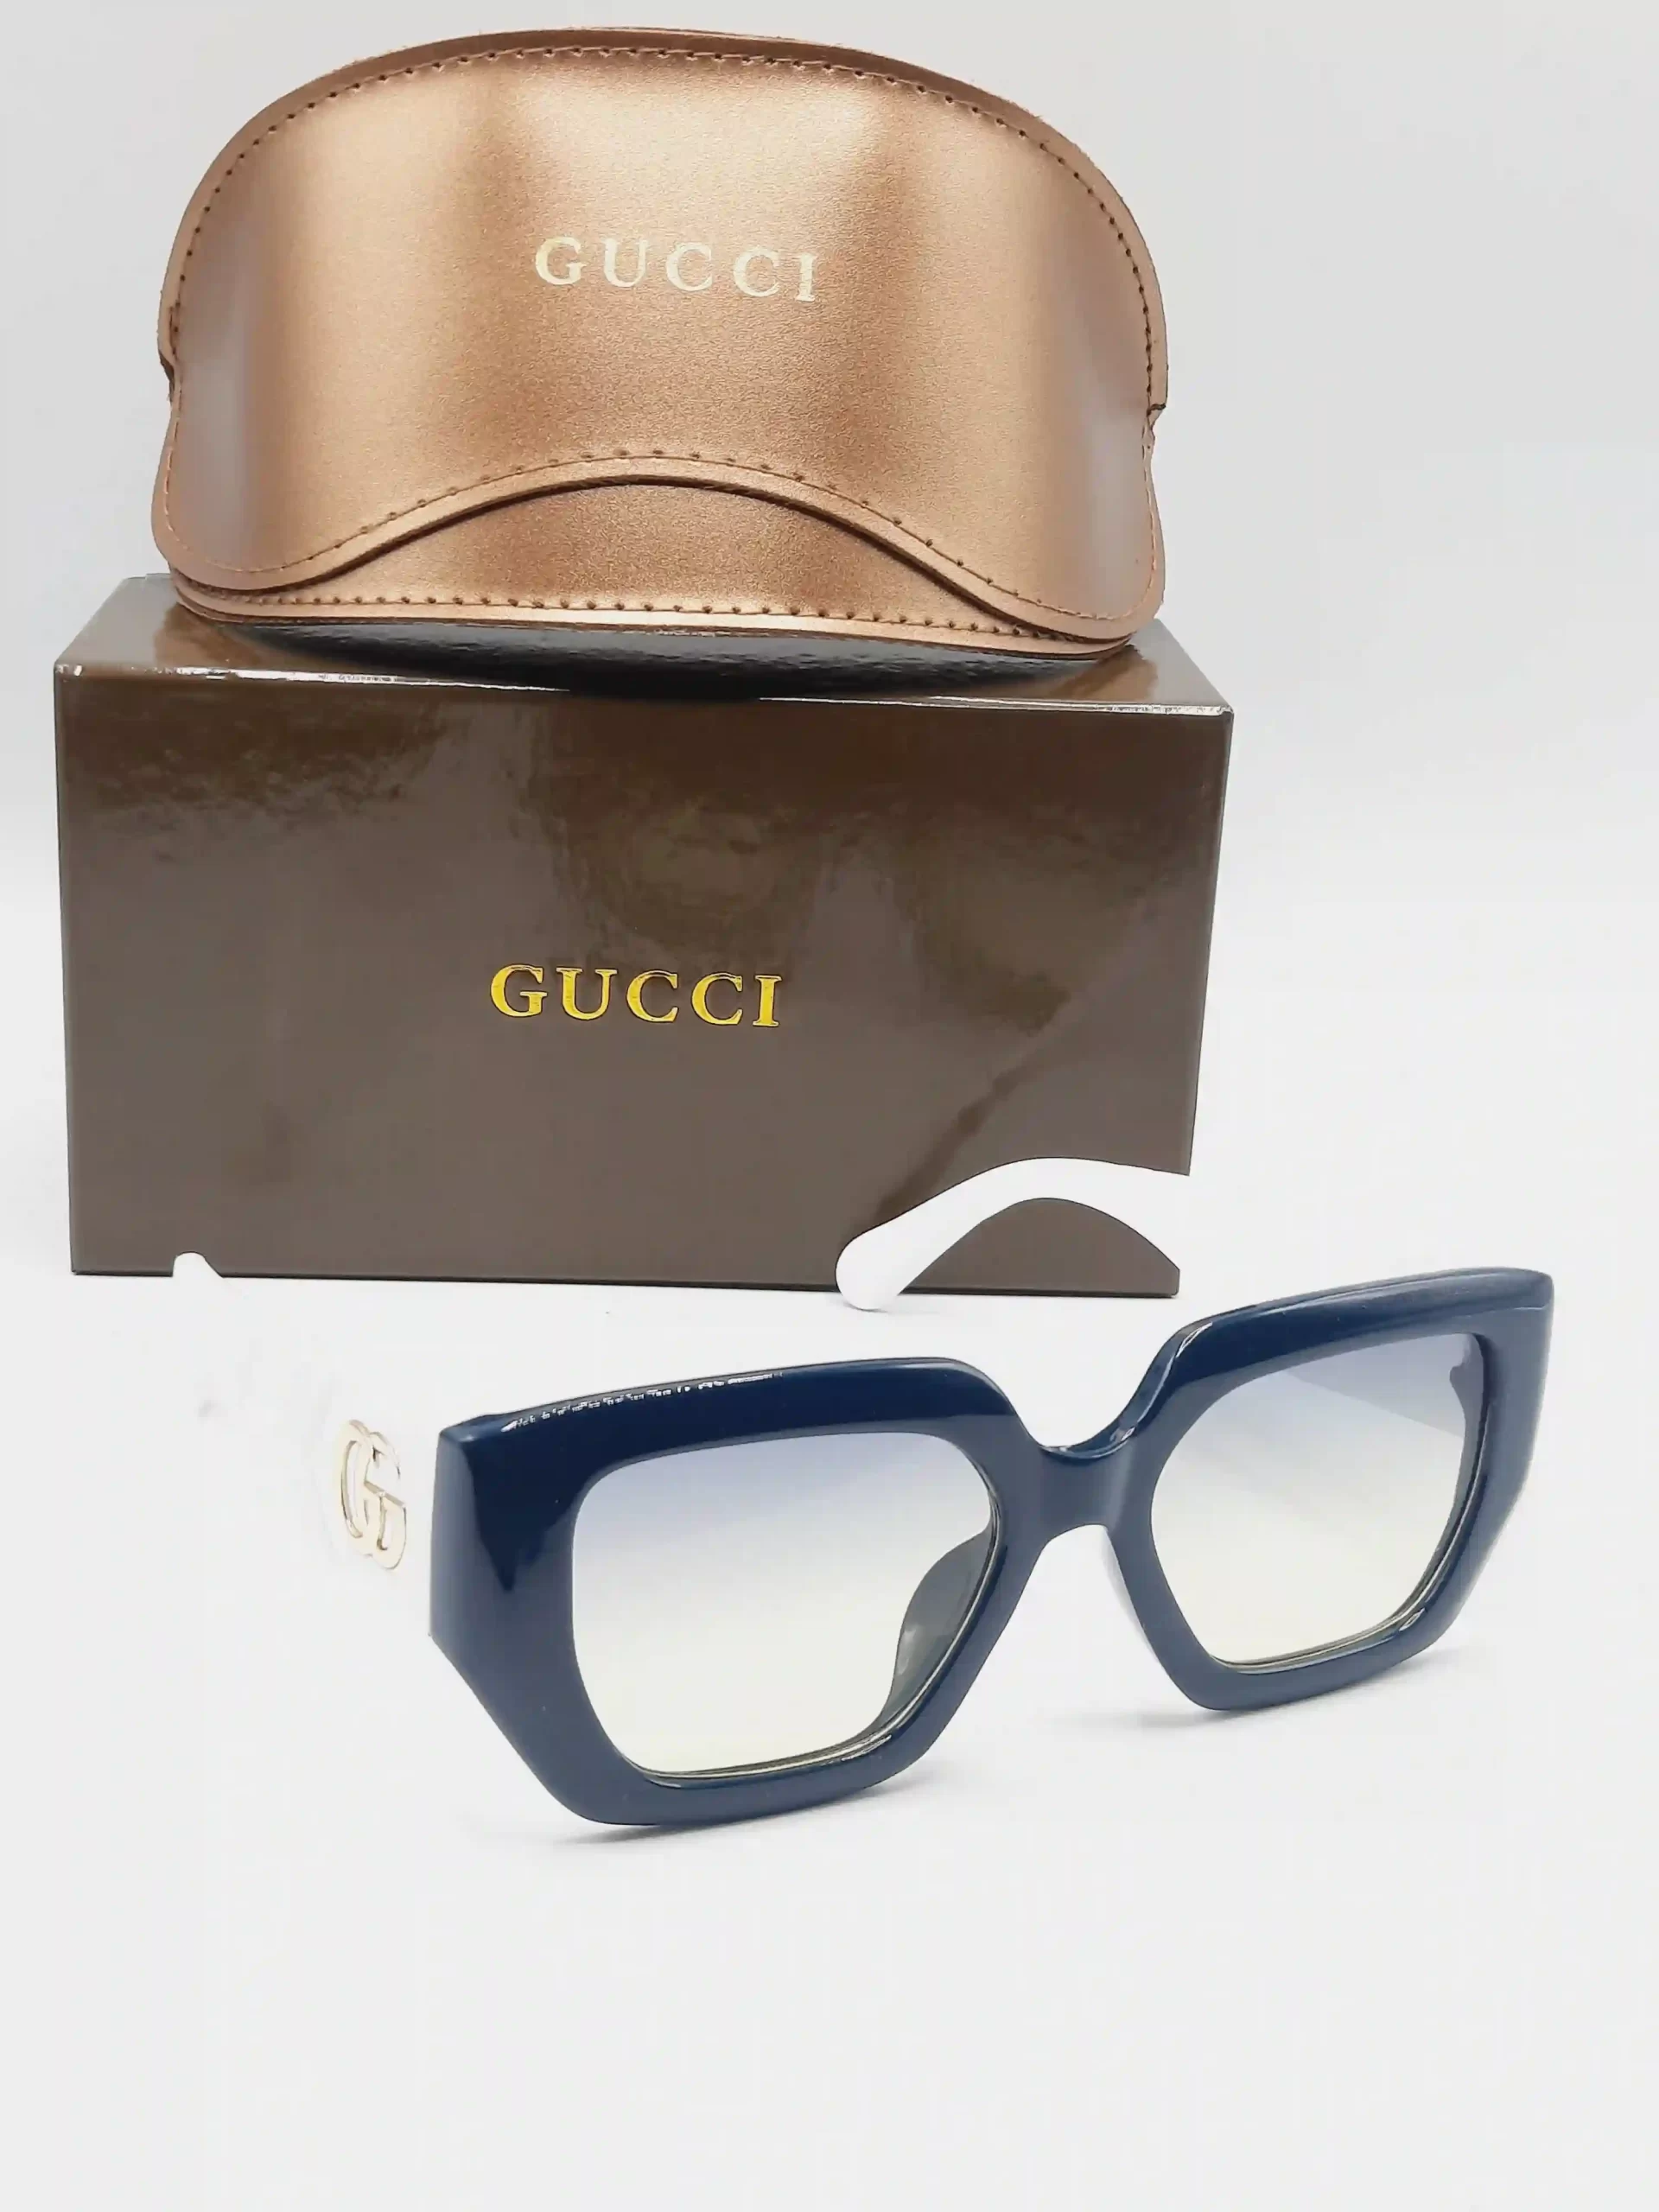 Gucci Sunglasses For Women-51923-540